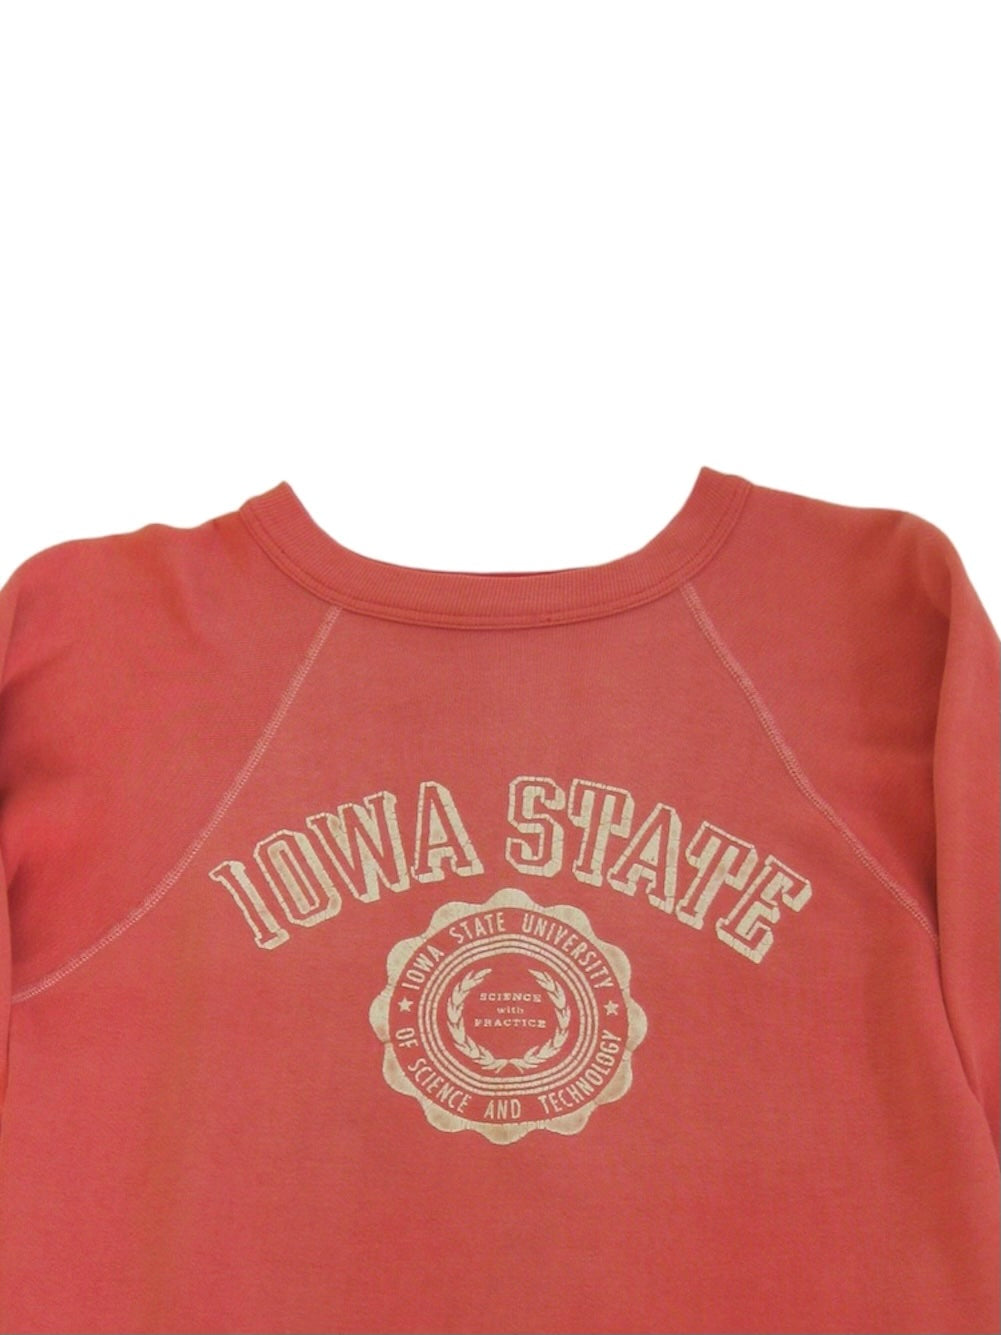 1960's Sweatshirt